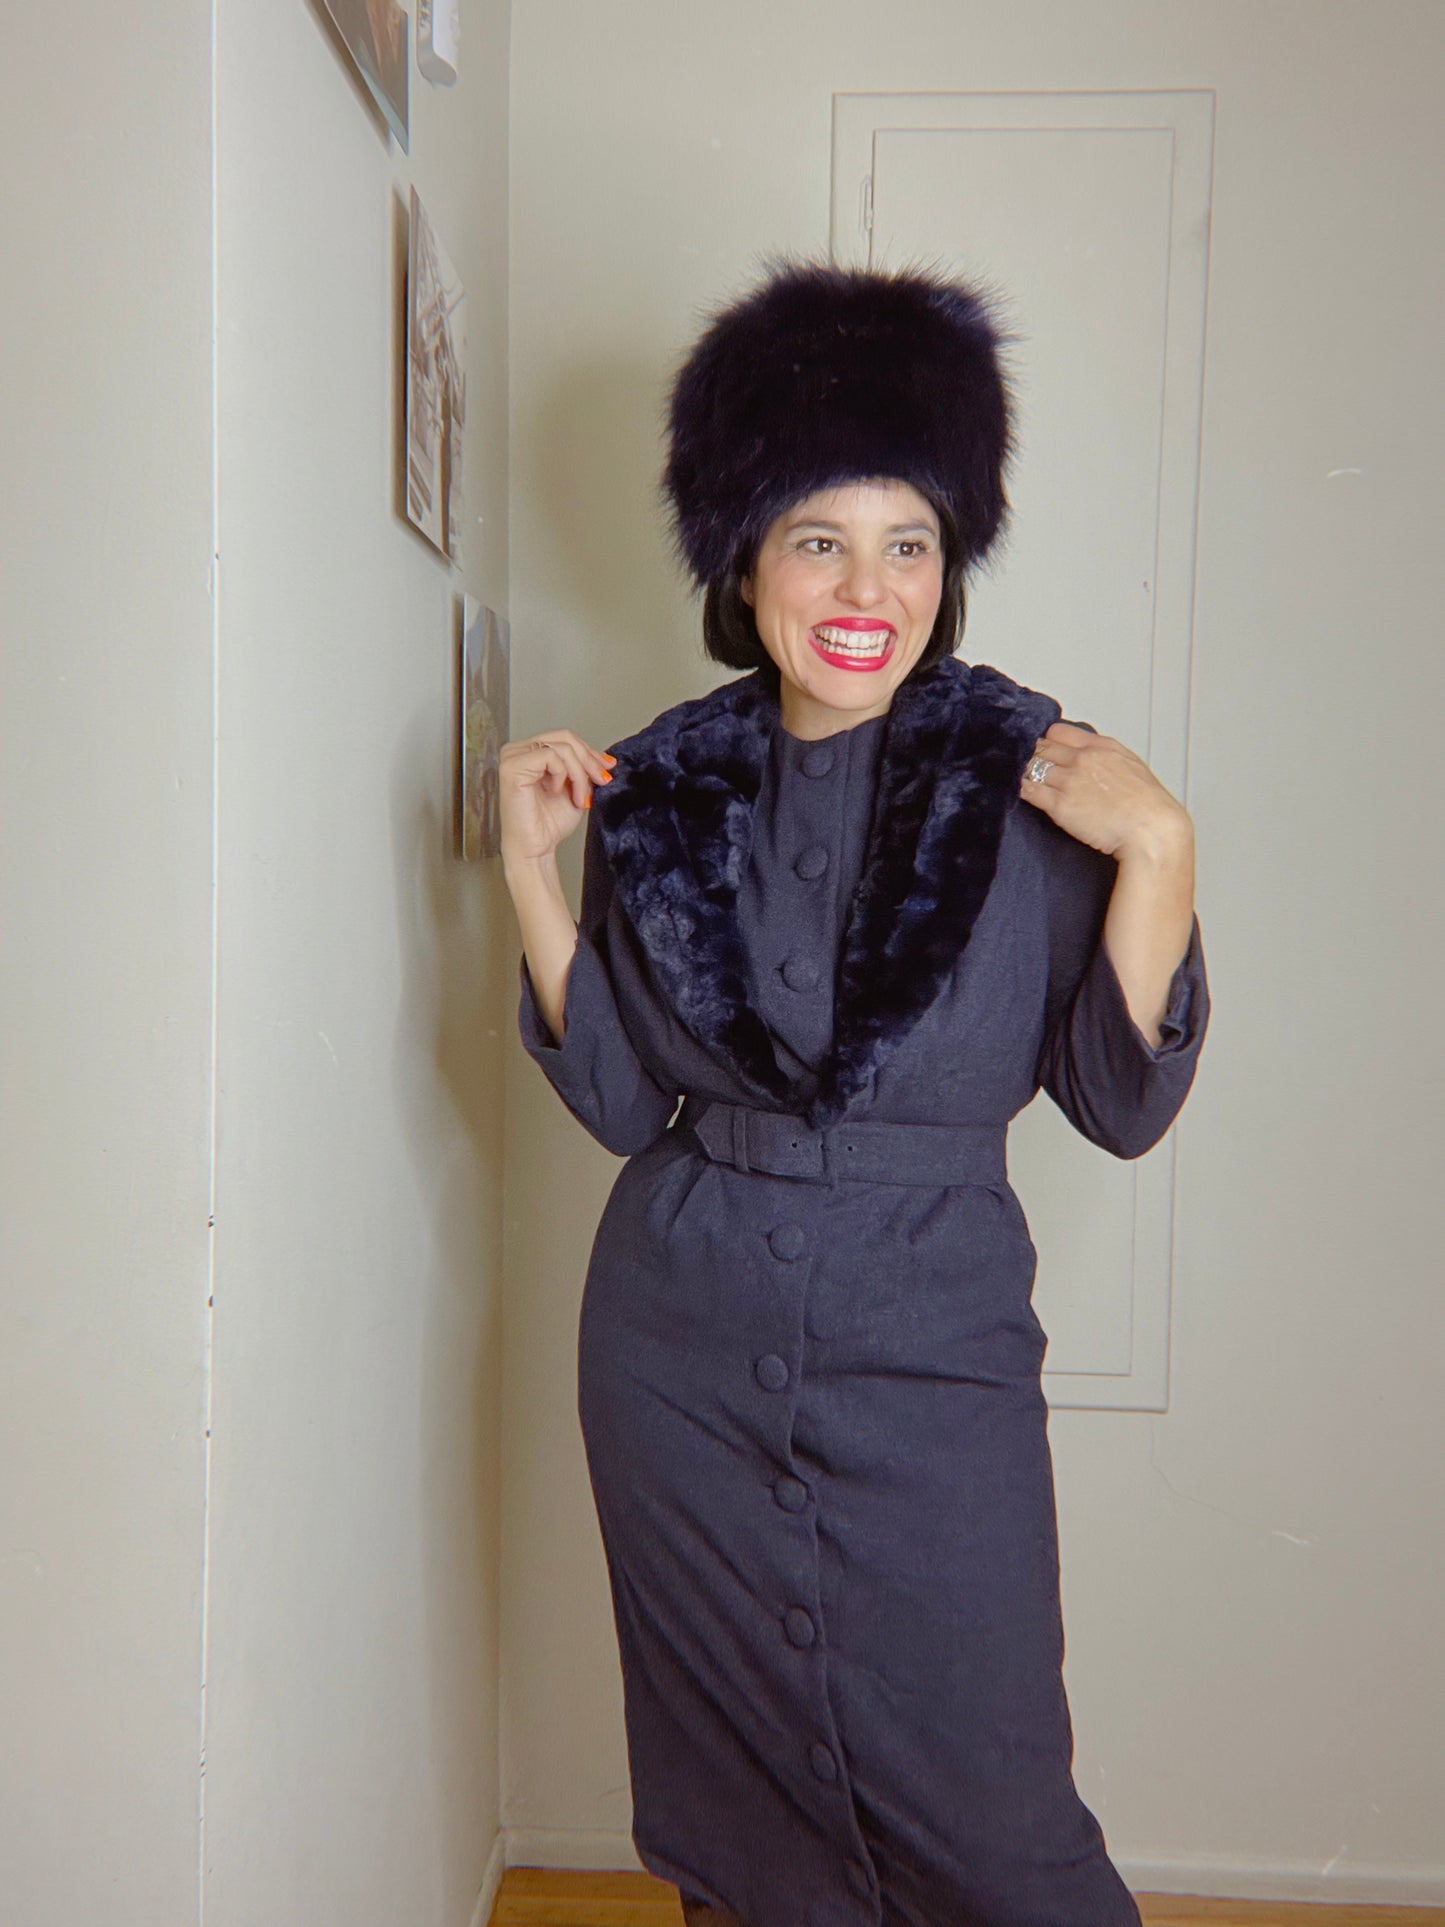 Vintage 50s / 60s Blue Faux Collar Coat Dress Fits sizes XS-SM